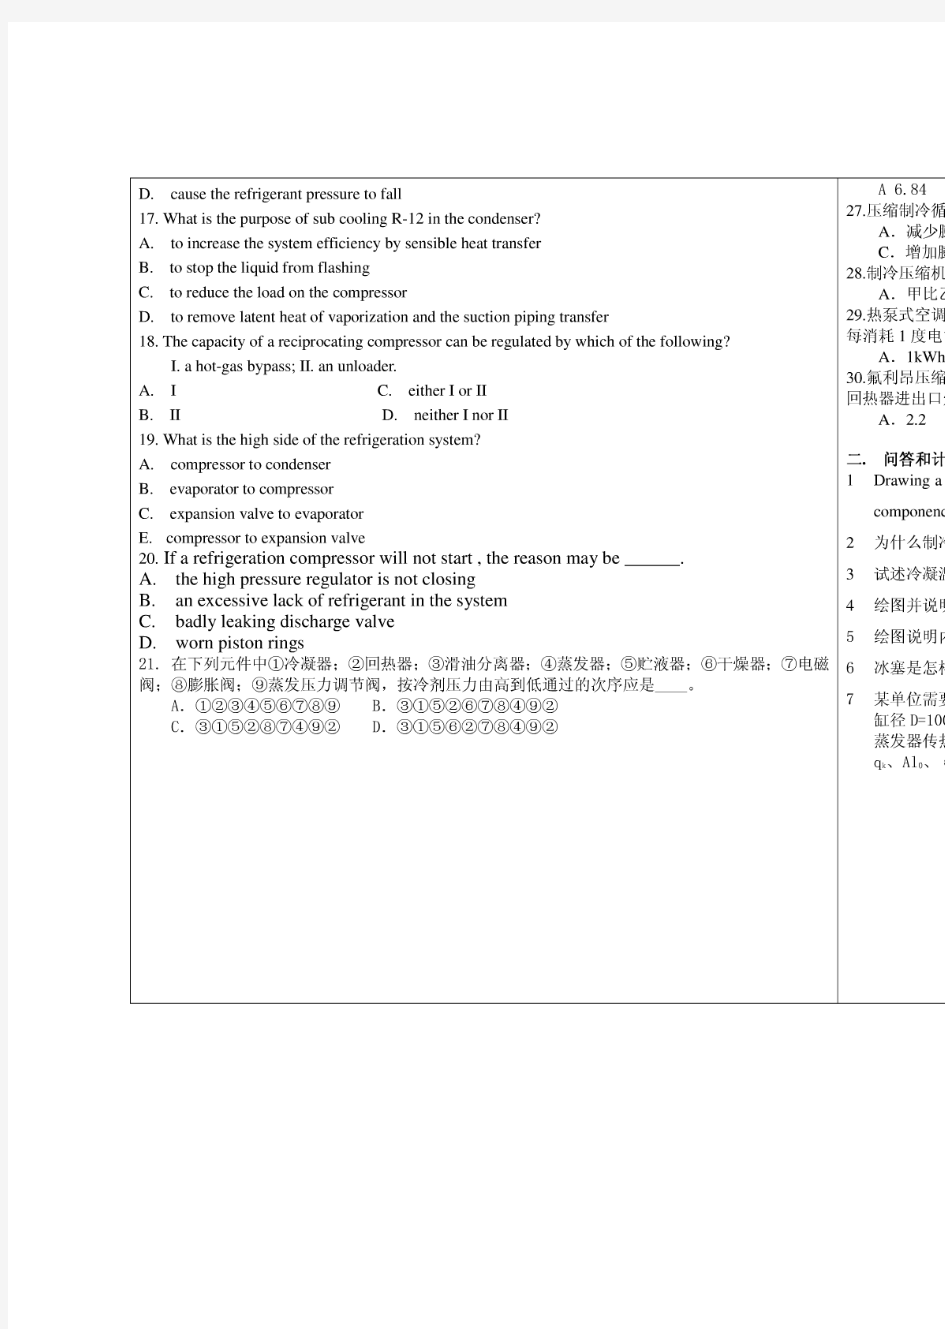 上海海事大学制冷原理与设备研究生考试复试试题-45